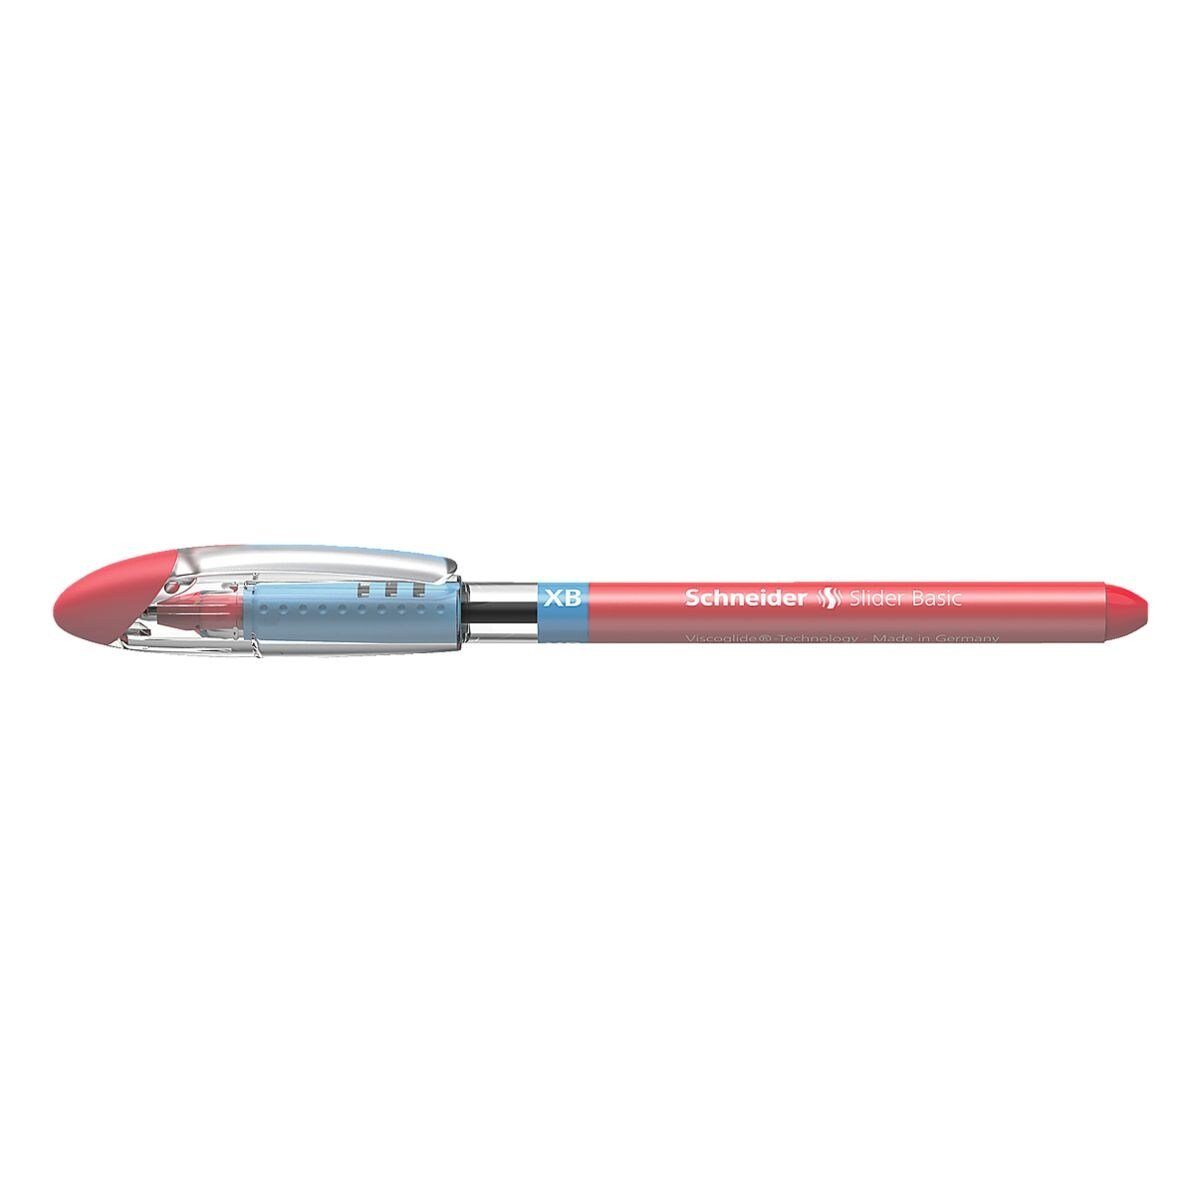 Schneider Kugelschreiber Slider XB 1512, mit Kappe, Strichbreite: 0,7 mm (XB) rot | Kugelschreiber